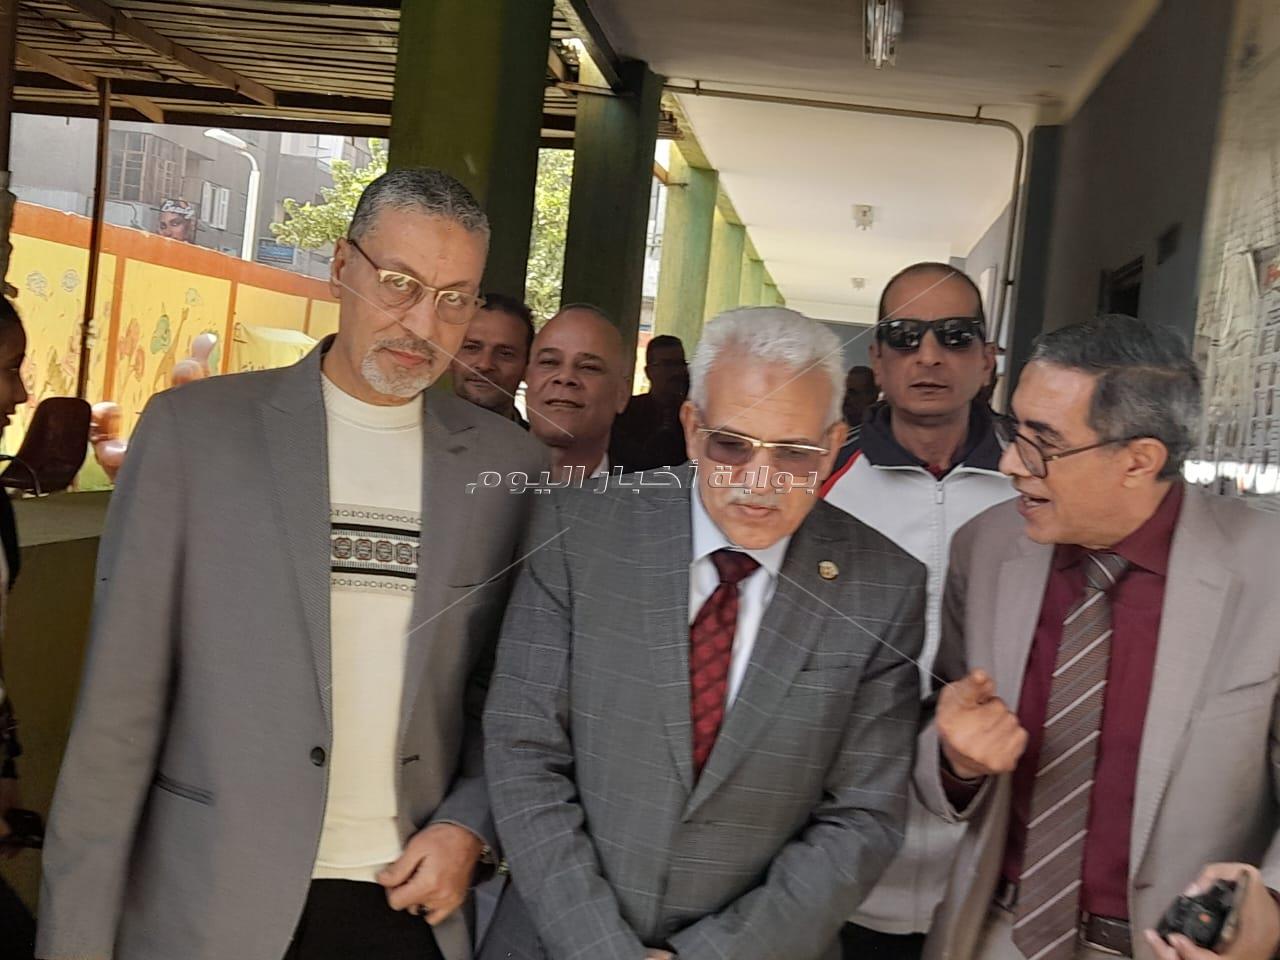 موسى: أن الإقبال الشديد على التصويت يكشف وحدة المصريين وحرصهم على صالح الوطن